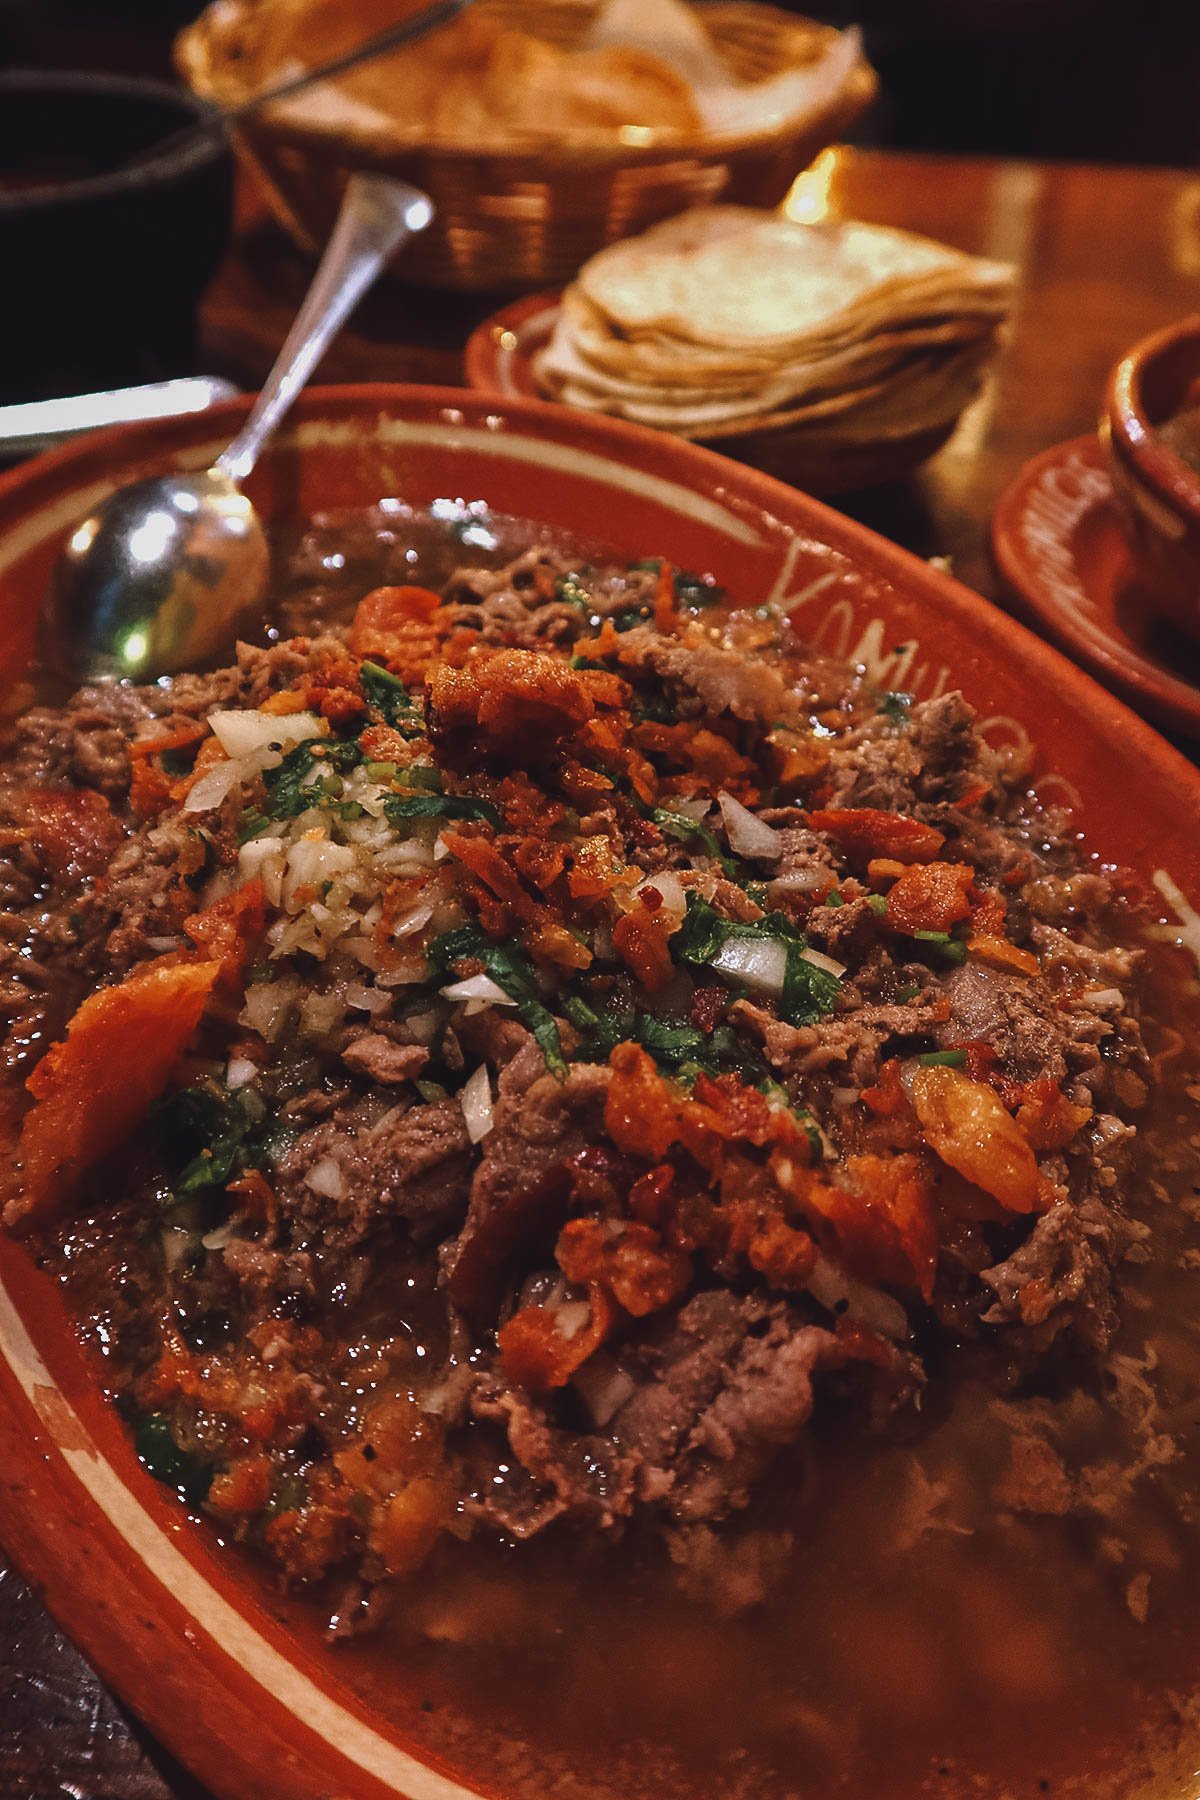 Carne en su jugo in a restaurant in Guadalajara, Mexico